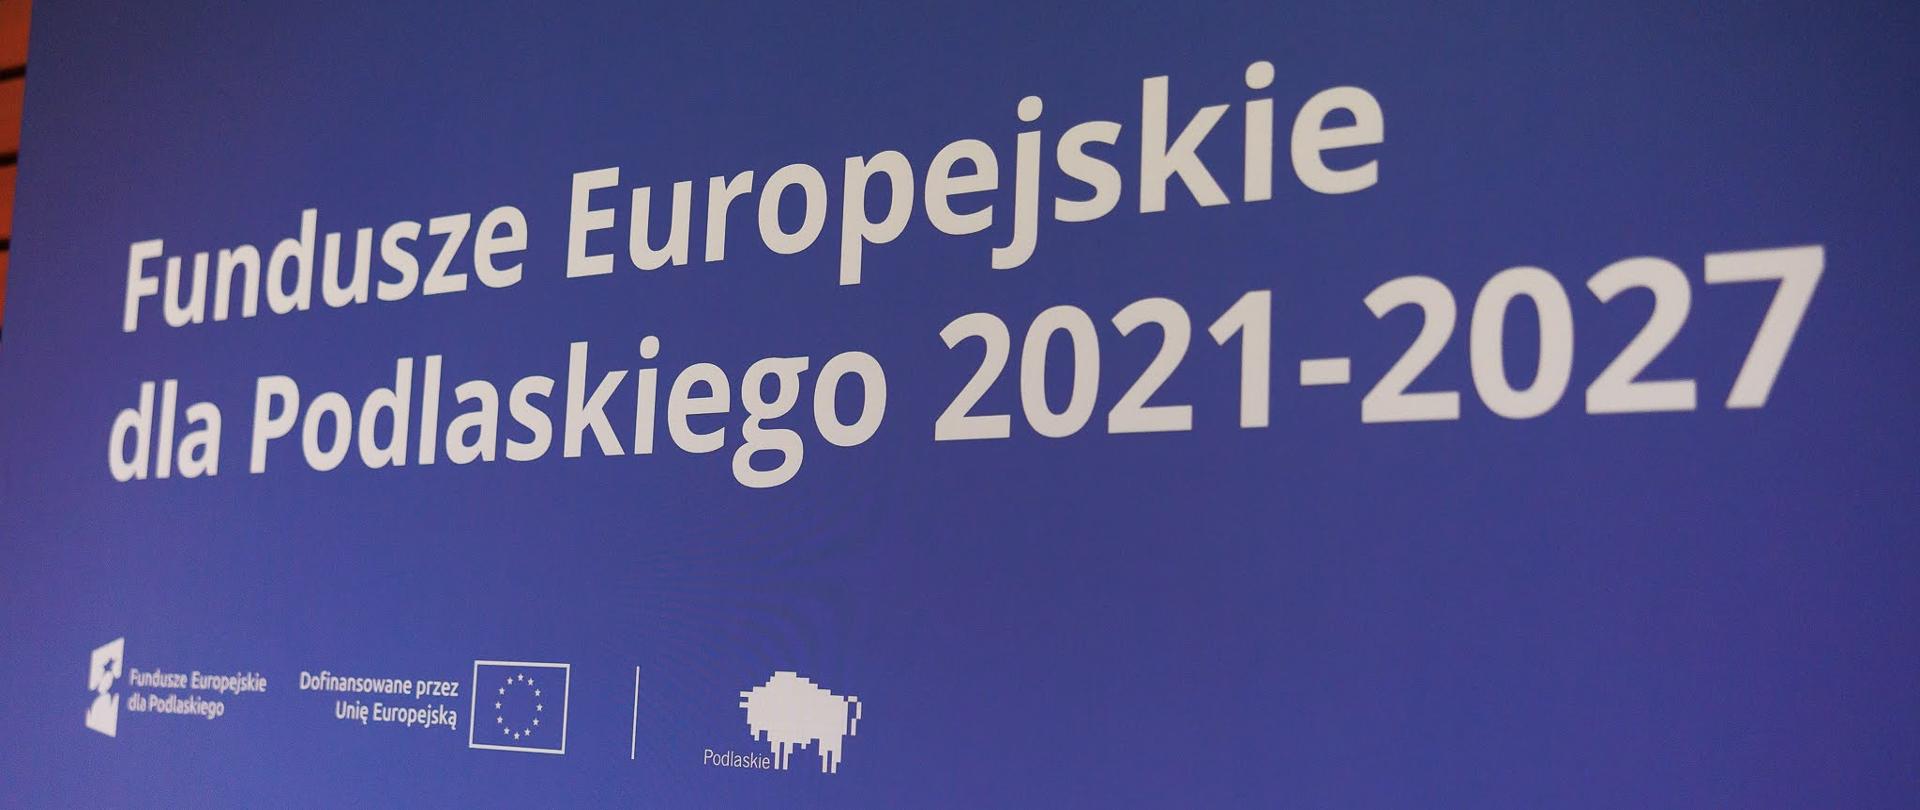 Prezentacja - na niebieskim tle napis: "Fundusze Europejskie dla Podlaskiego 2021 - 2027"